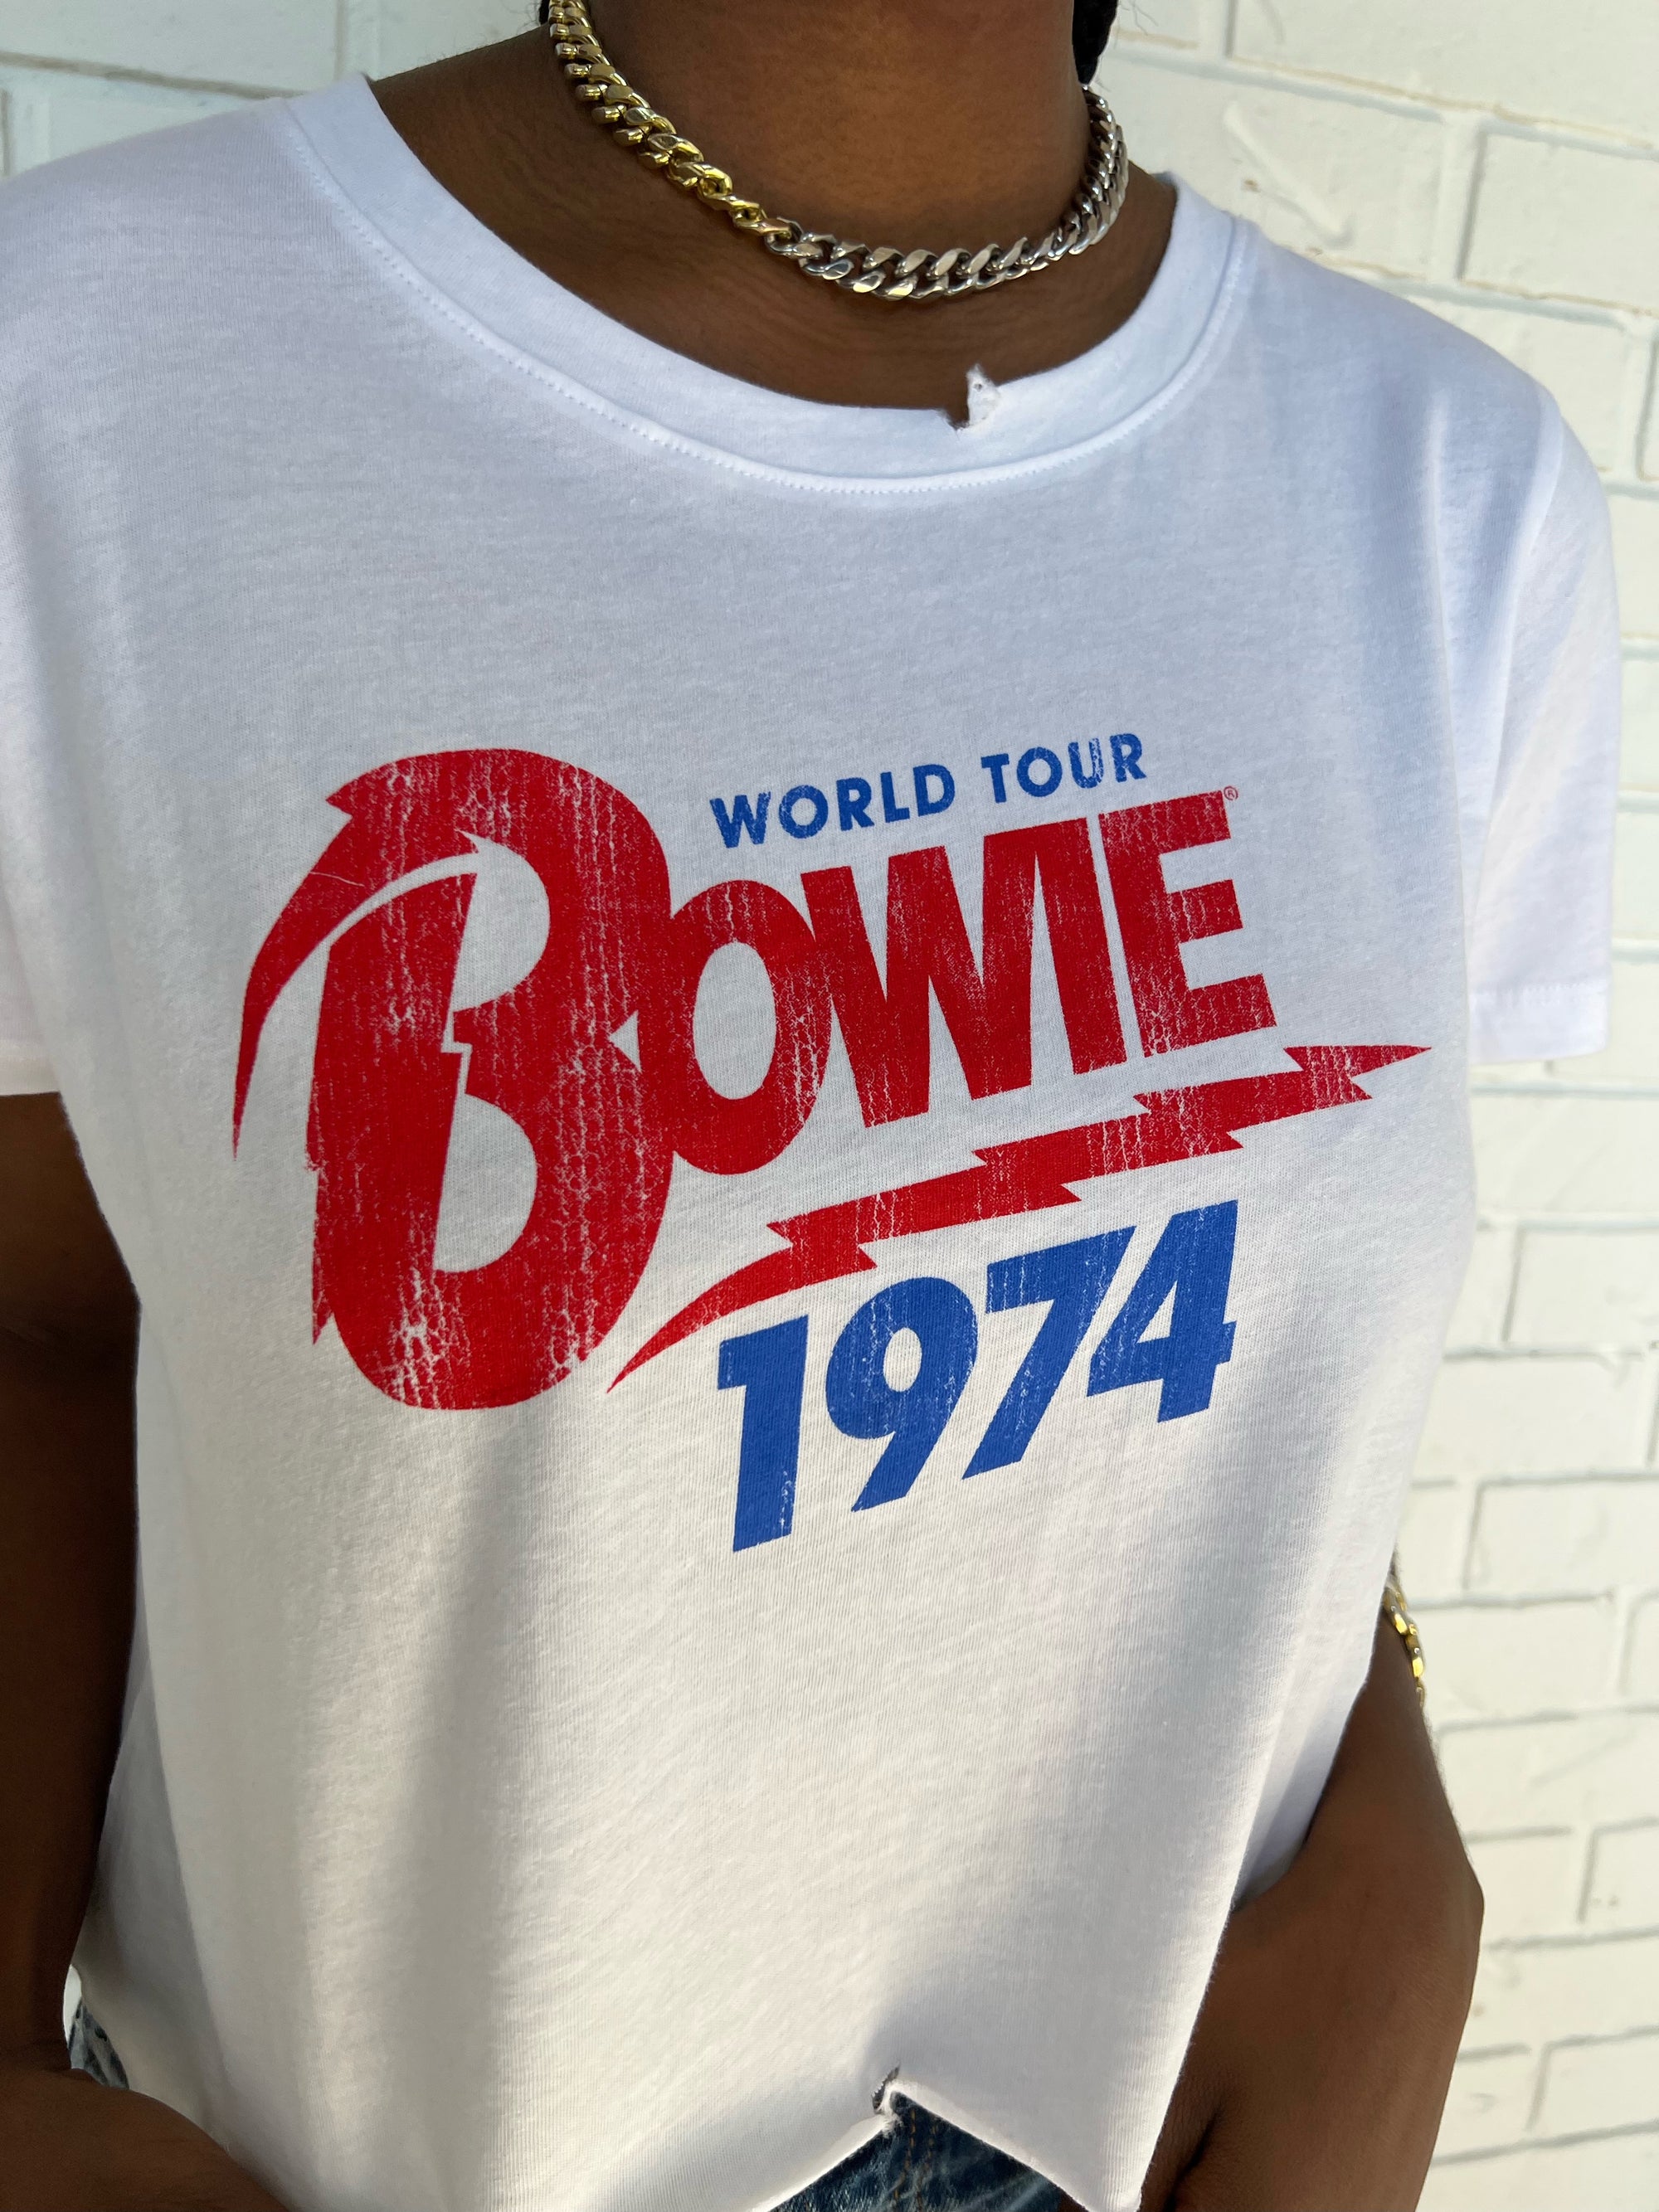 Bowie 74' World Tour Crop Tee